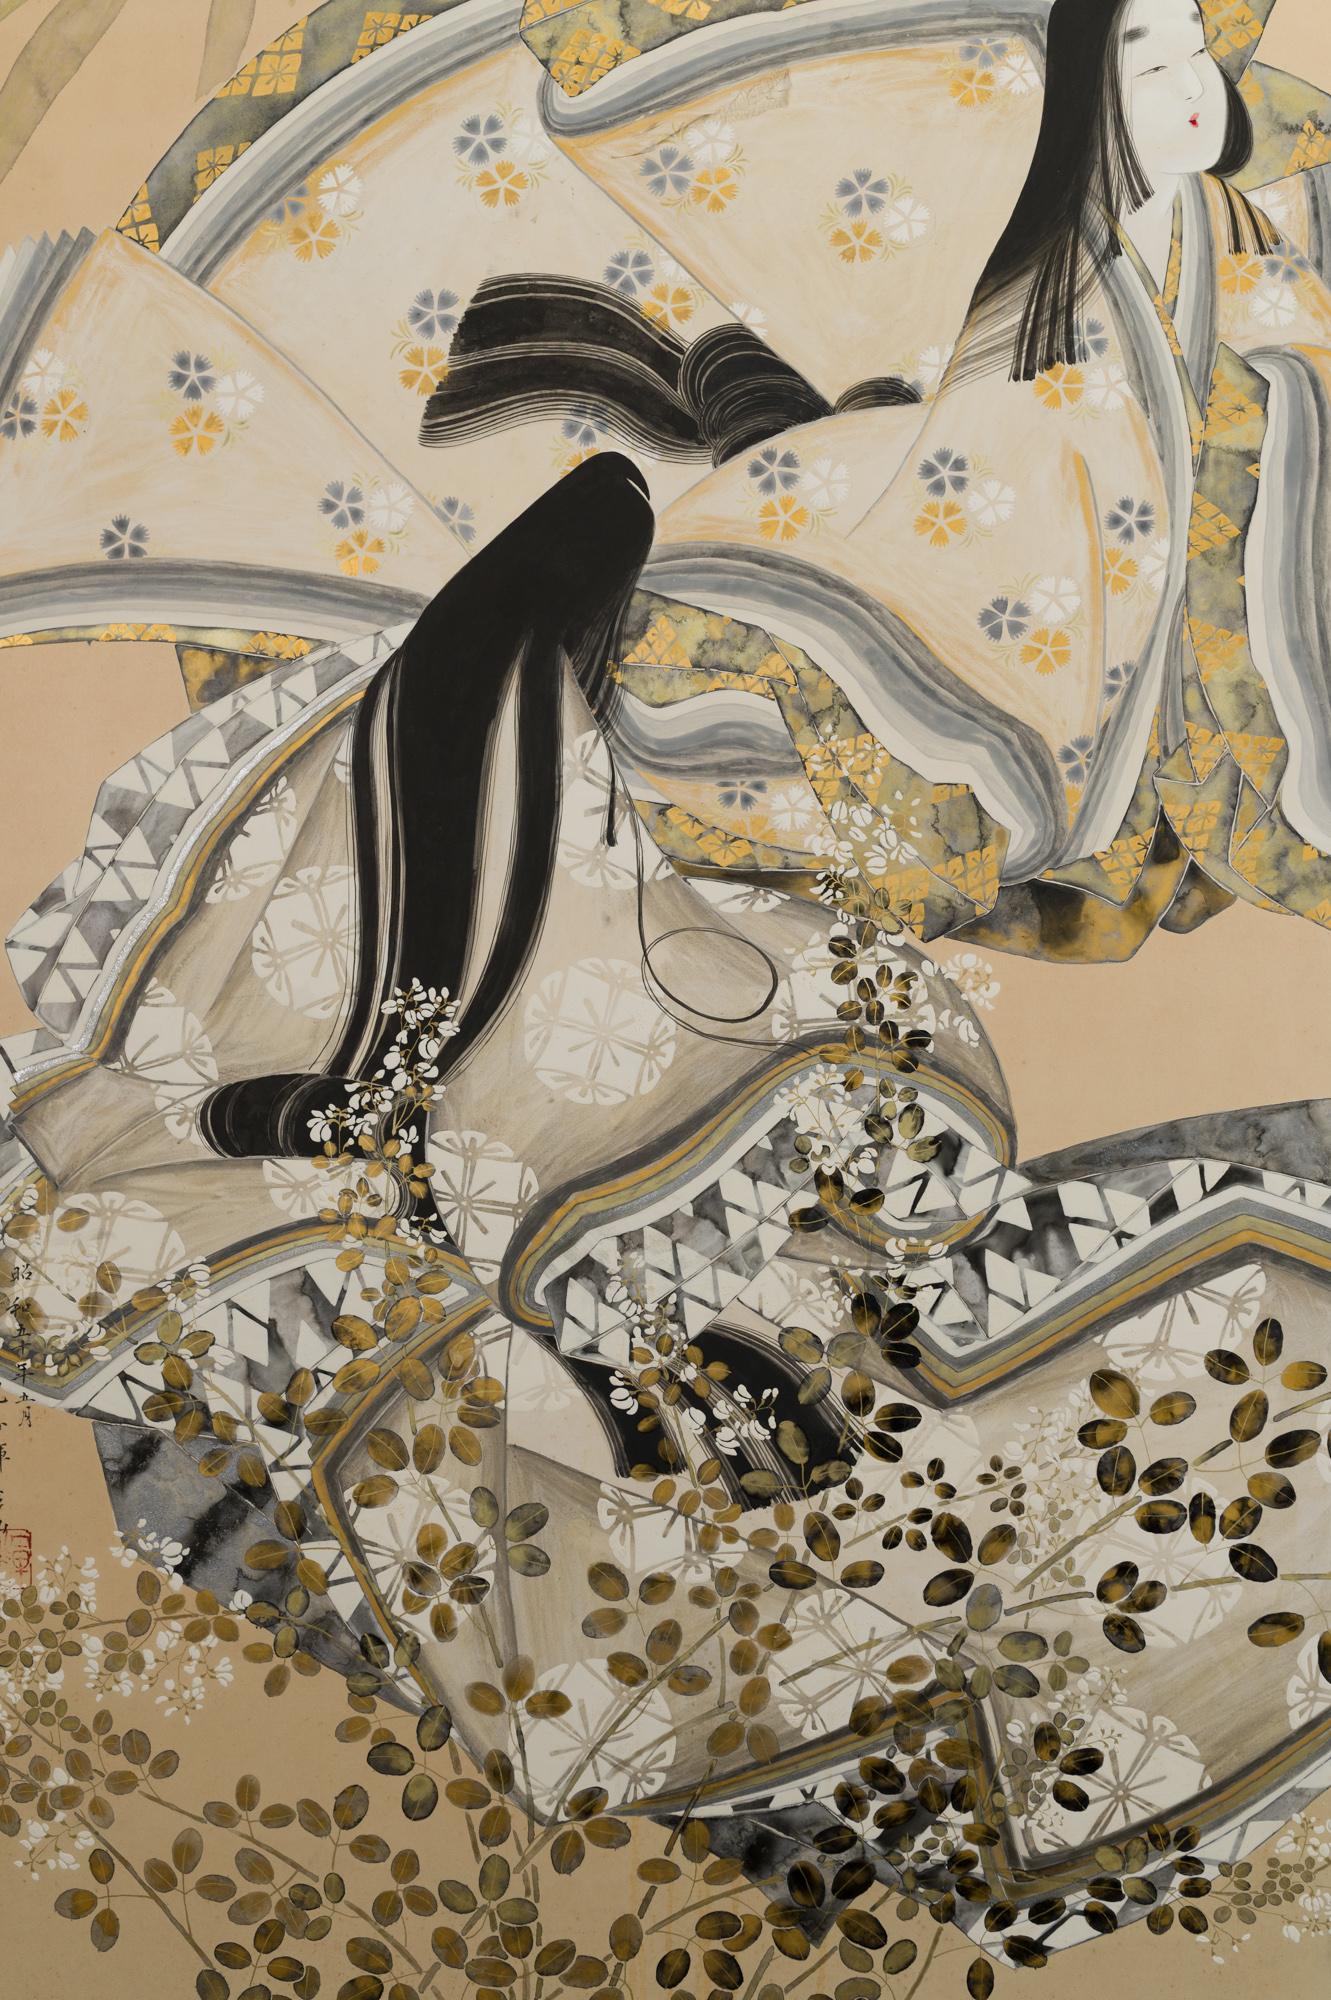 Japanischer Zwei-Panel-Bildschirm: Mondbetrachtung, Gemälde von zwei adligen Frauen, die den Vollmond im Freien bewundern. Äußerst raffinierte Ausführung der Malerei mit überlappenden Mustern und Draperien. Blumen und Gräser im Mondlicht [darunter